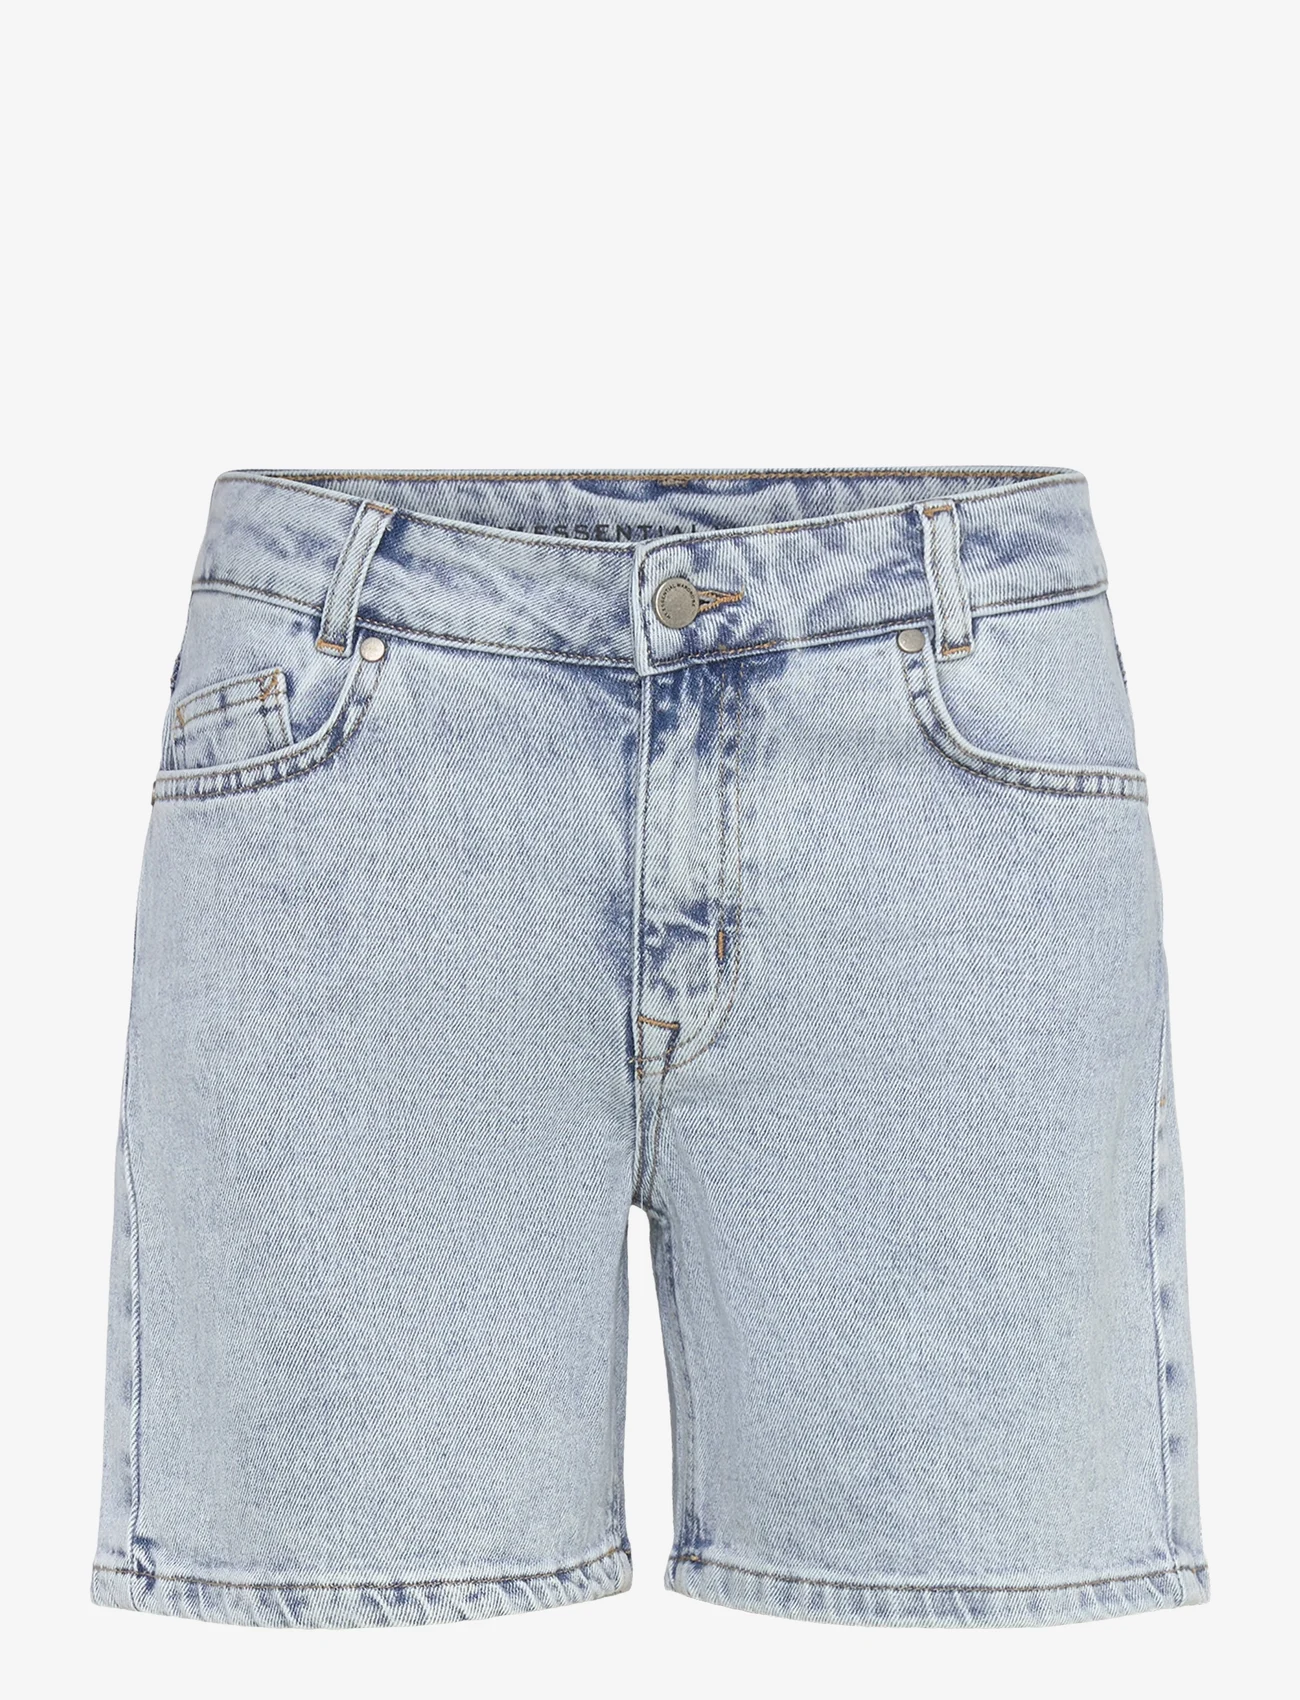 My Essential Wardrobe - LucyMW 139 High Shorts Y - short en jeans - light blue retro wash - 0